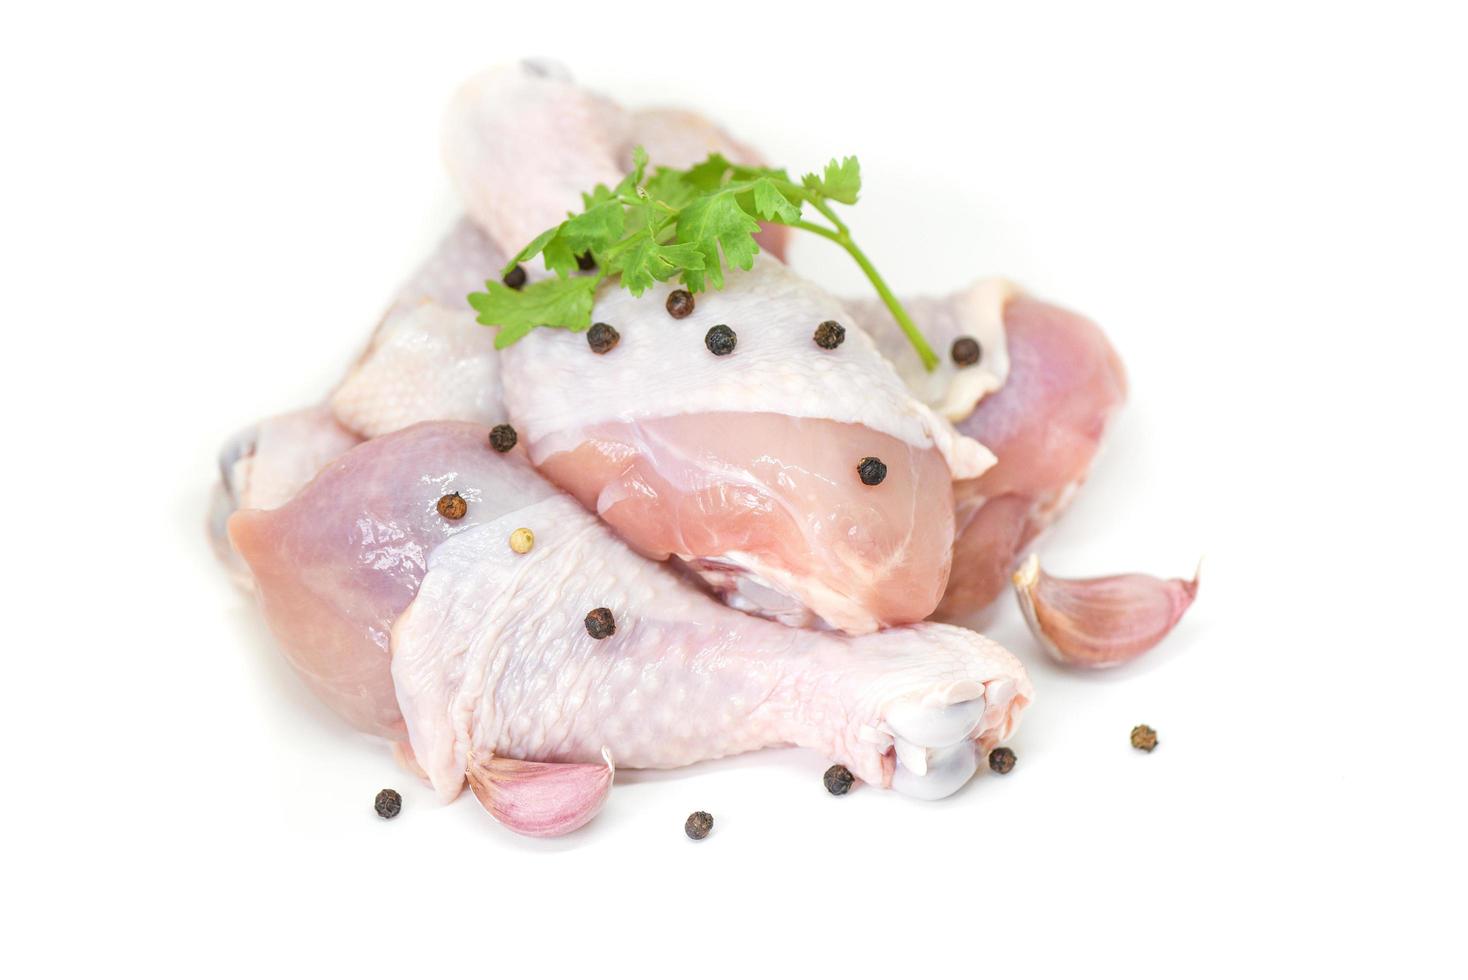 rauw kippenbeen met ingrediënten voor het koken van voedsel op witte achtergrond - vers ongekookt kippenvlees voor het koken van voedsel foto